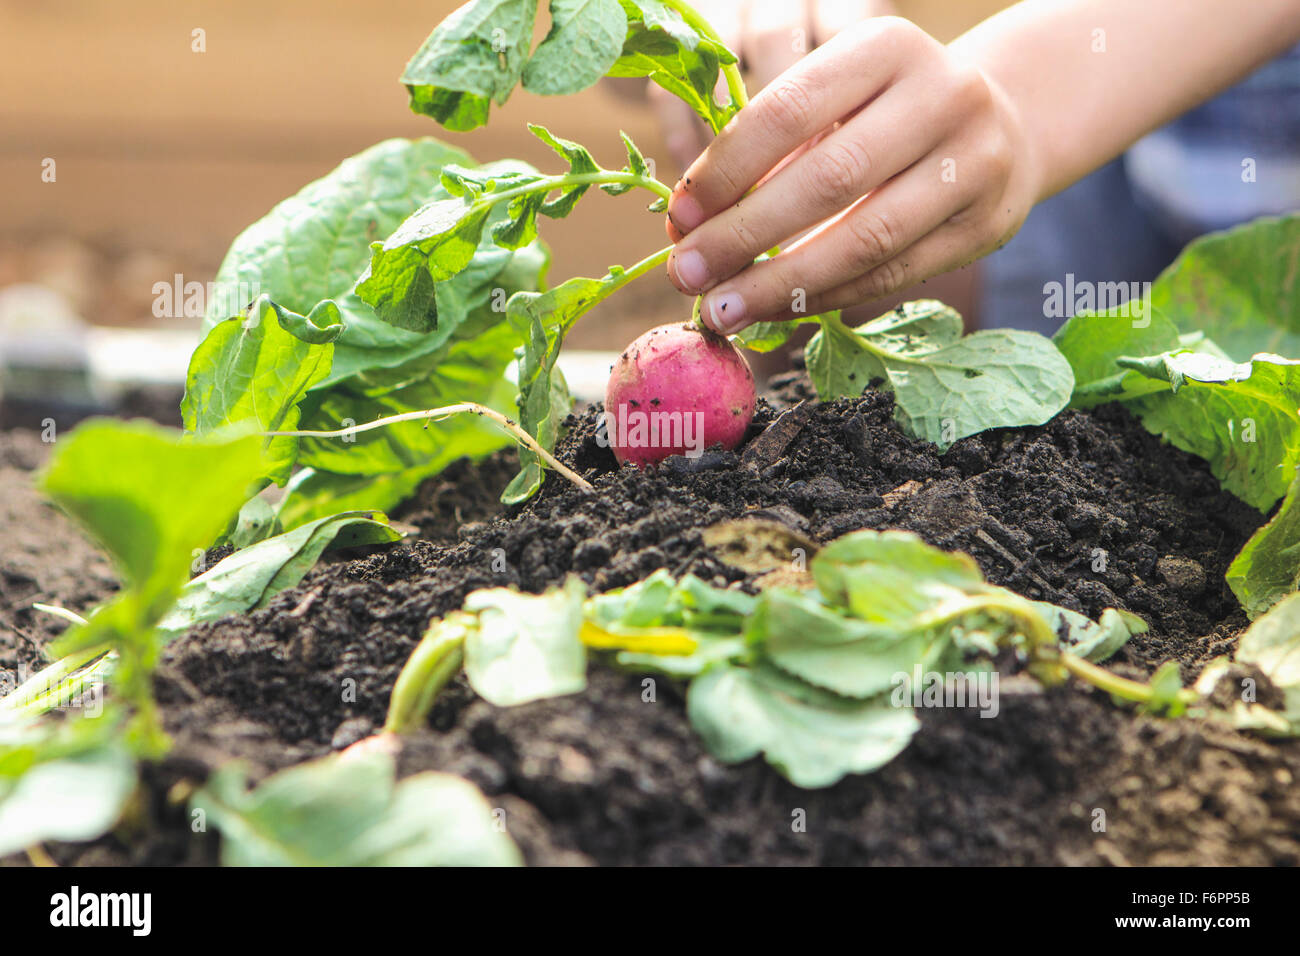 Caucasian boy picking radish in garden Stock Photo